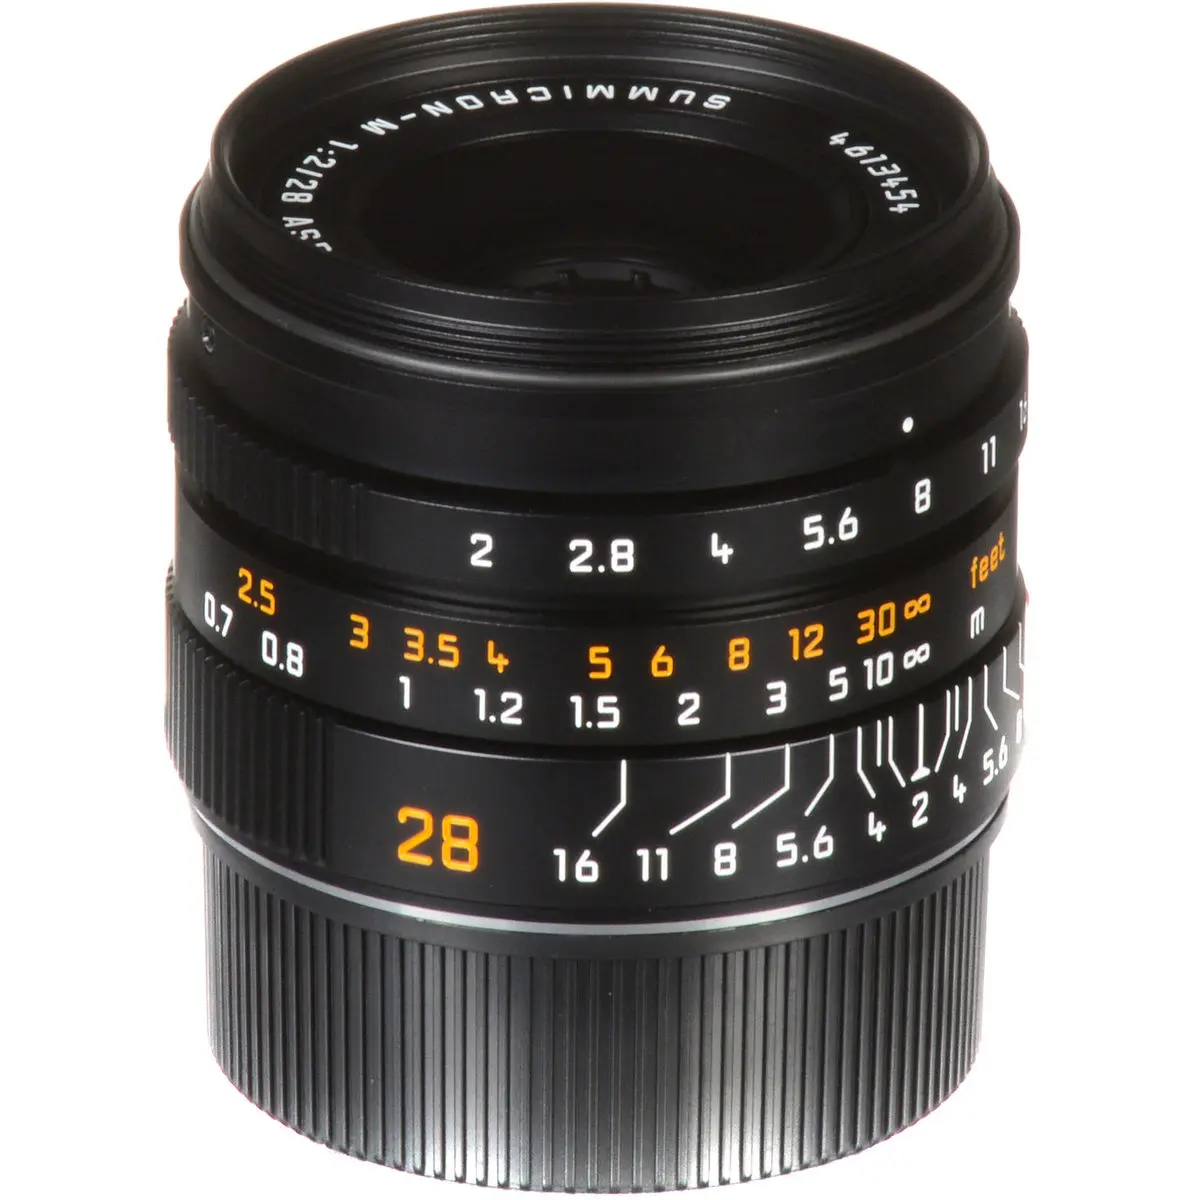 6. LEICA SUMMICRON-M 28mm f/2 ASPH Lens